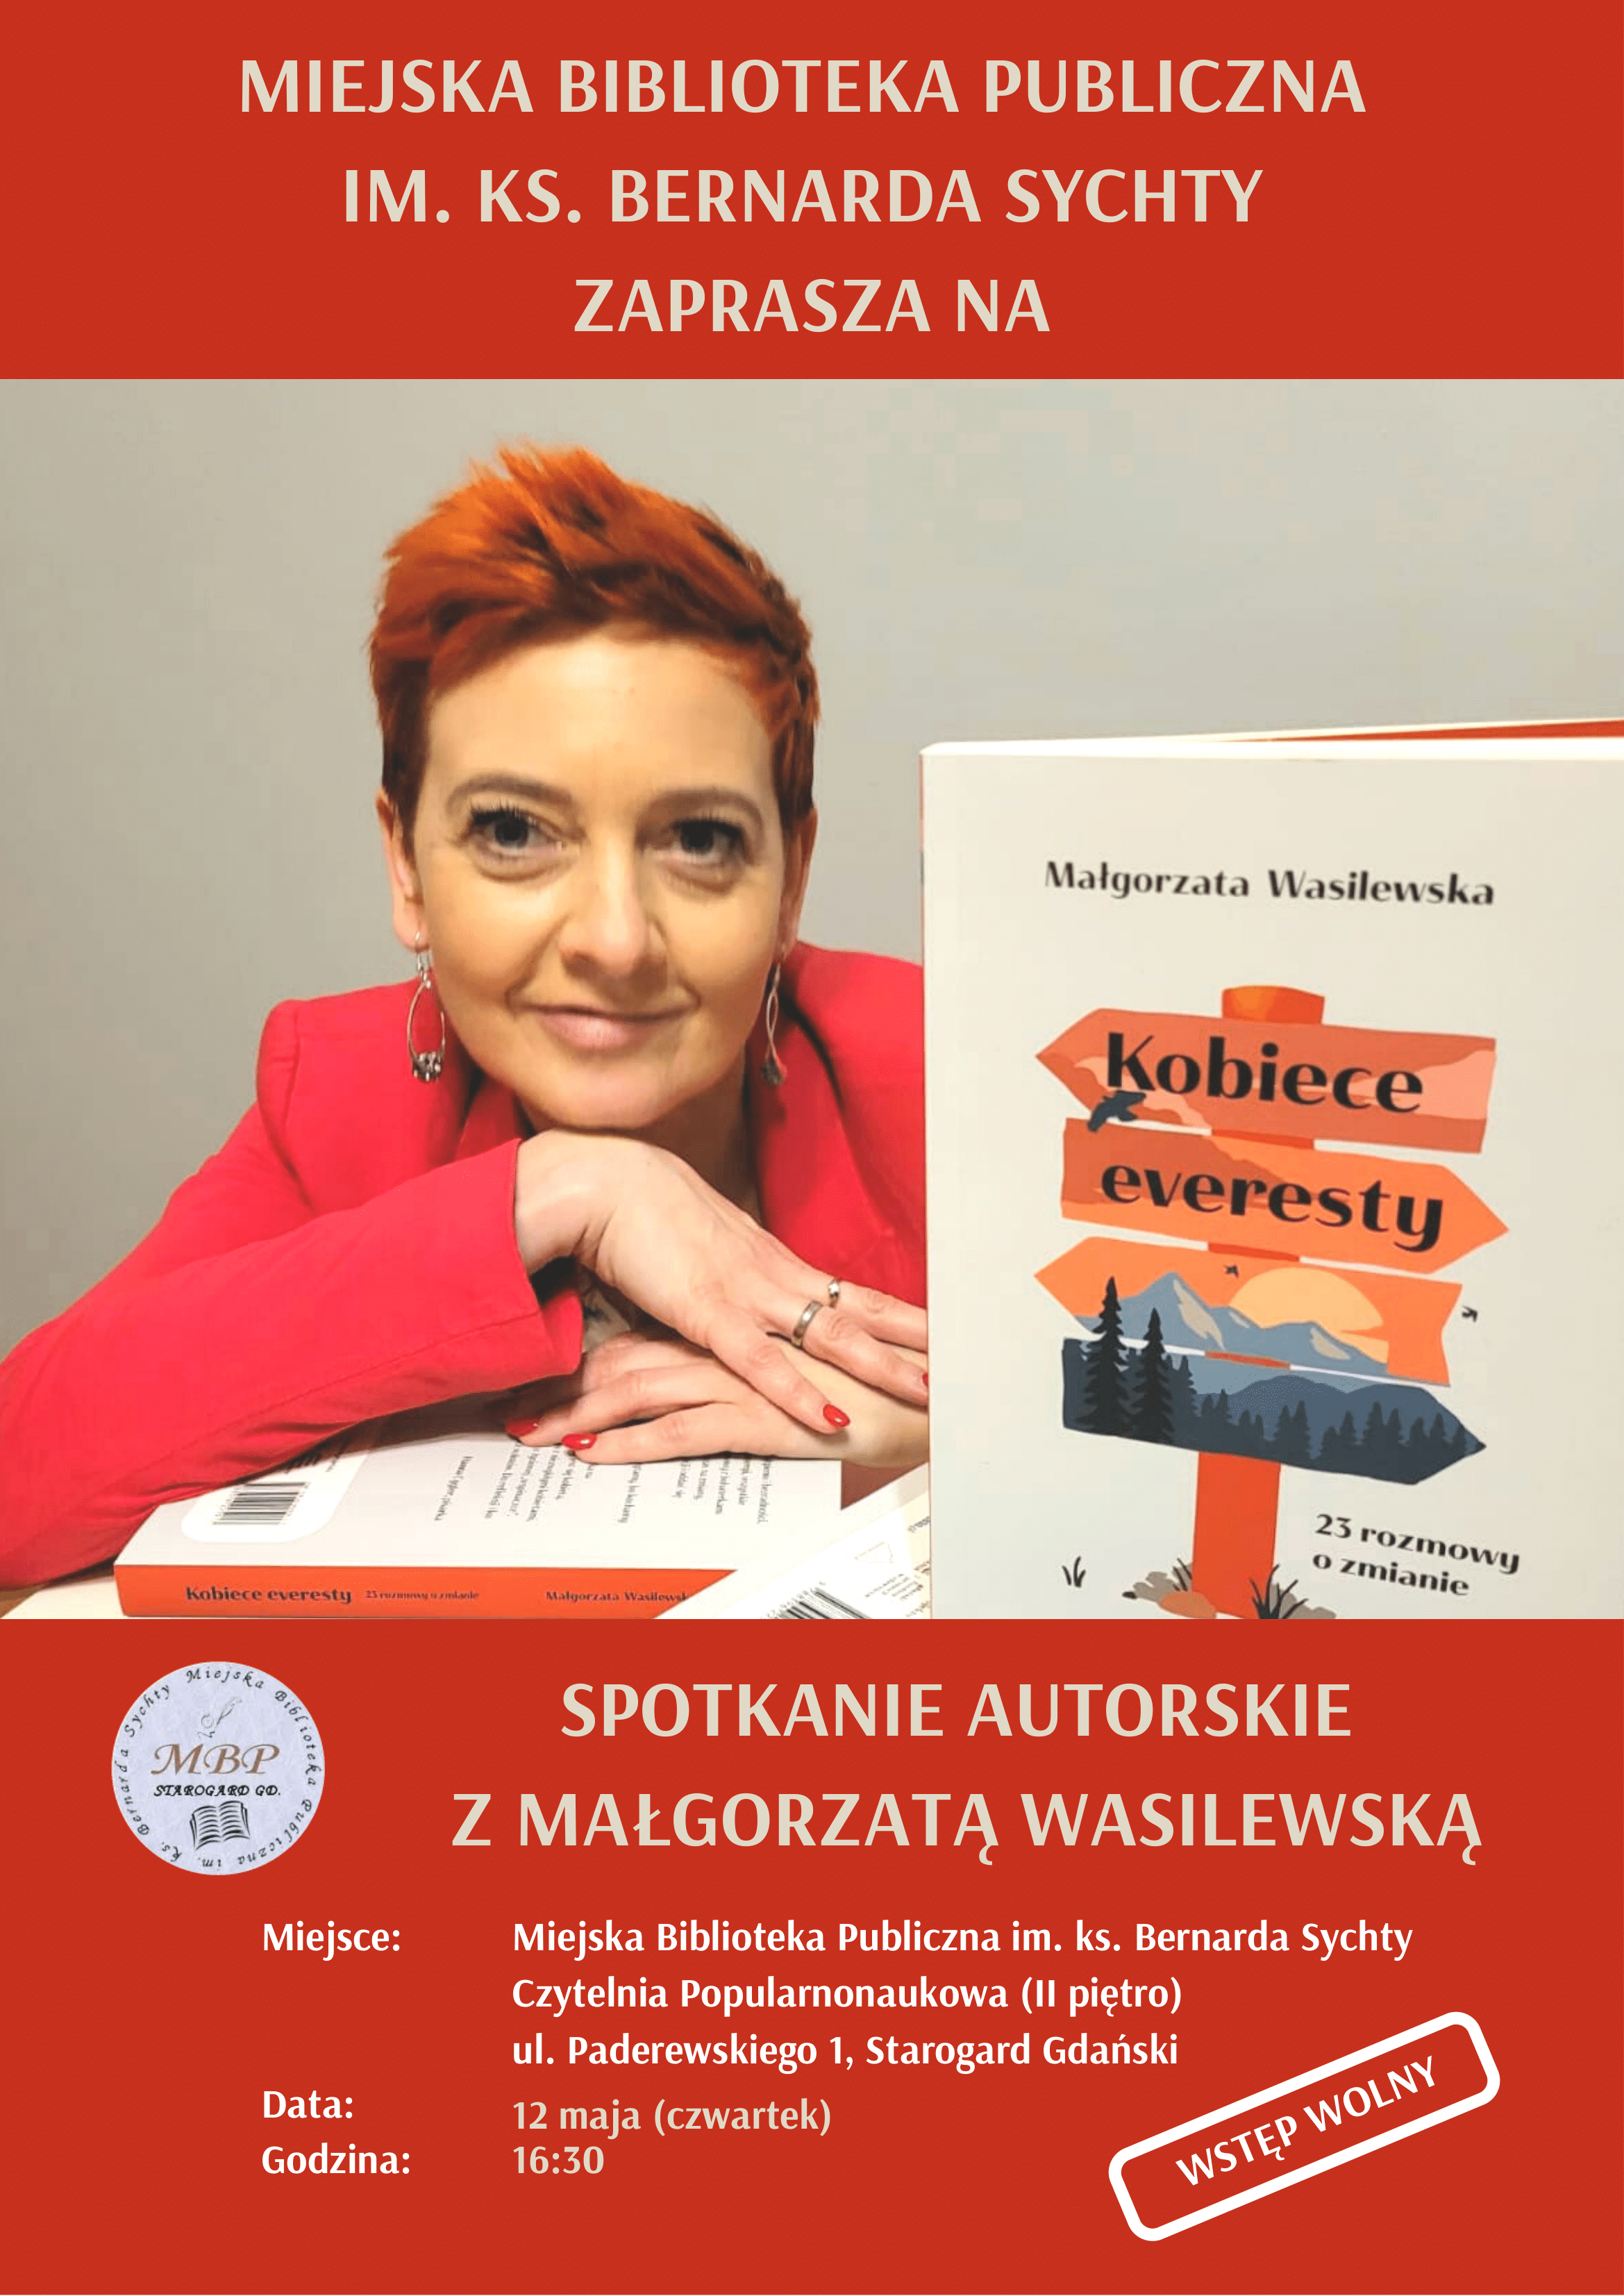 Serdecznie zapraszamy na spotkanie z panią Małgorzatą Wasilewską, autorką książki "Kobiece everesty", które odbędzie się w czwartek 12 maja o godz. 16:30 w Czytelni Popularnonaukowej (II piętro). Na ilustracji autorka z ksiażką.